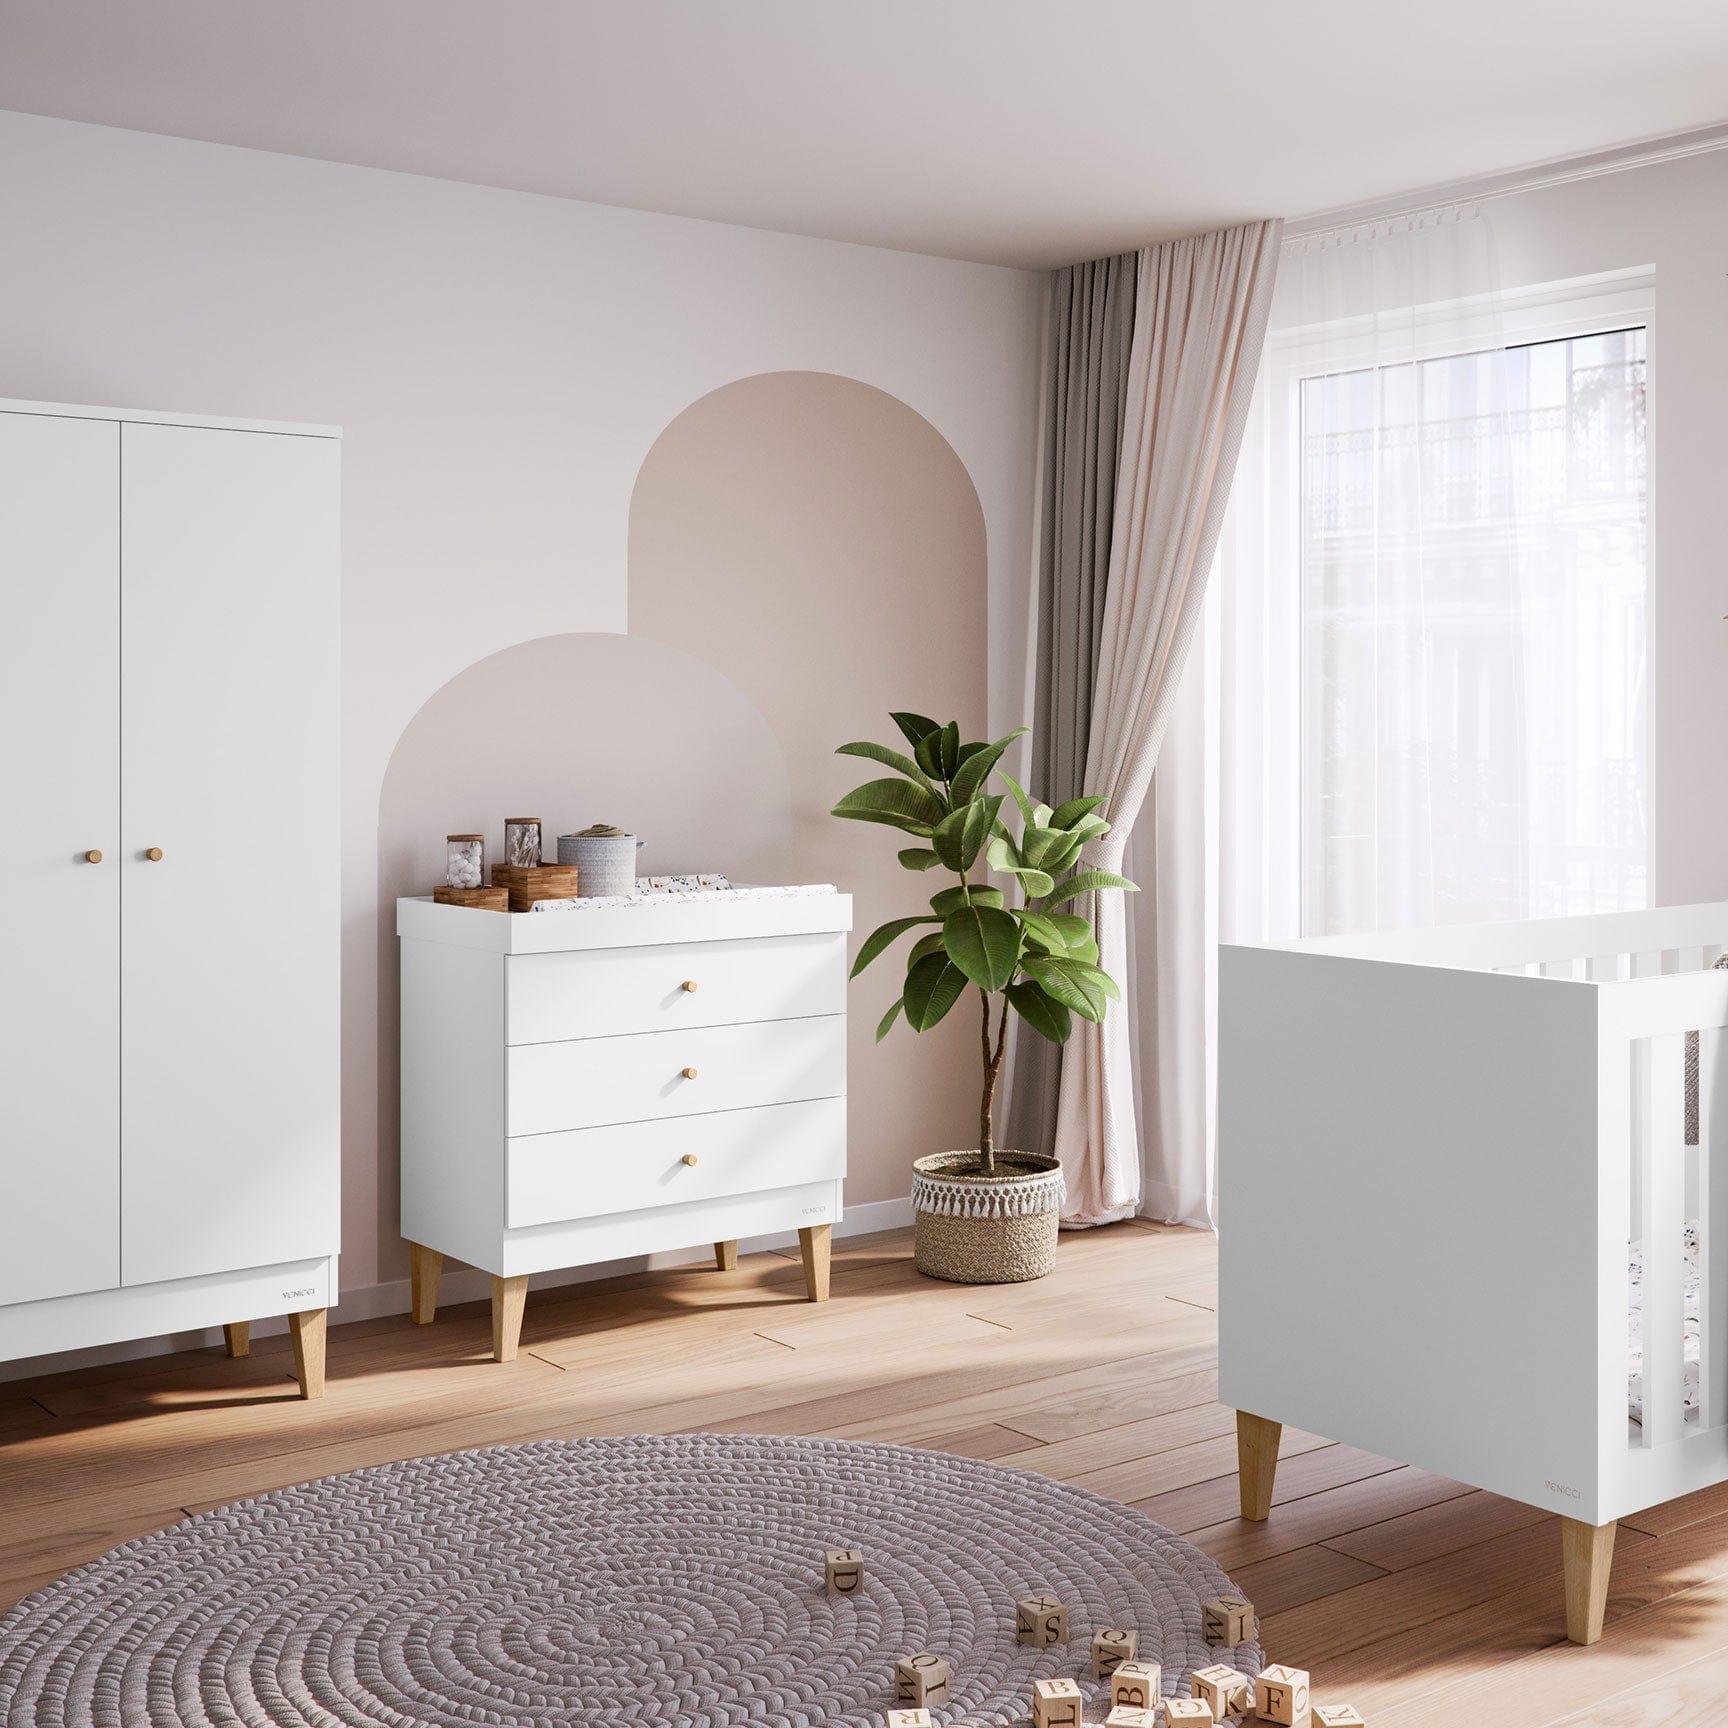 Venicci Saluzzo 3 Piece Roomset in Premium White Nursery Room Sets